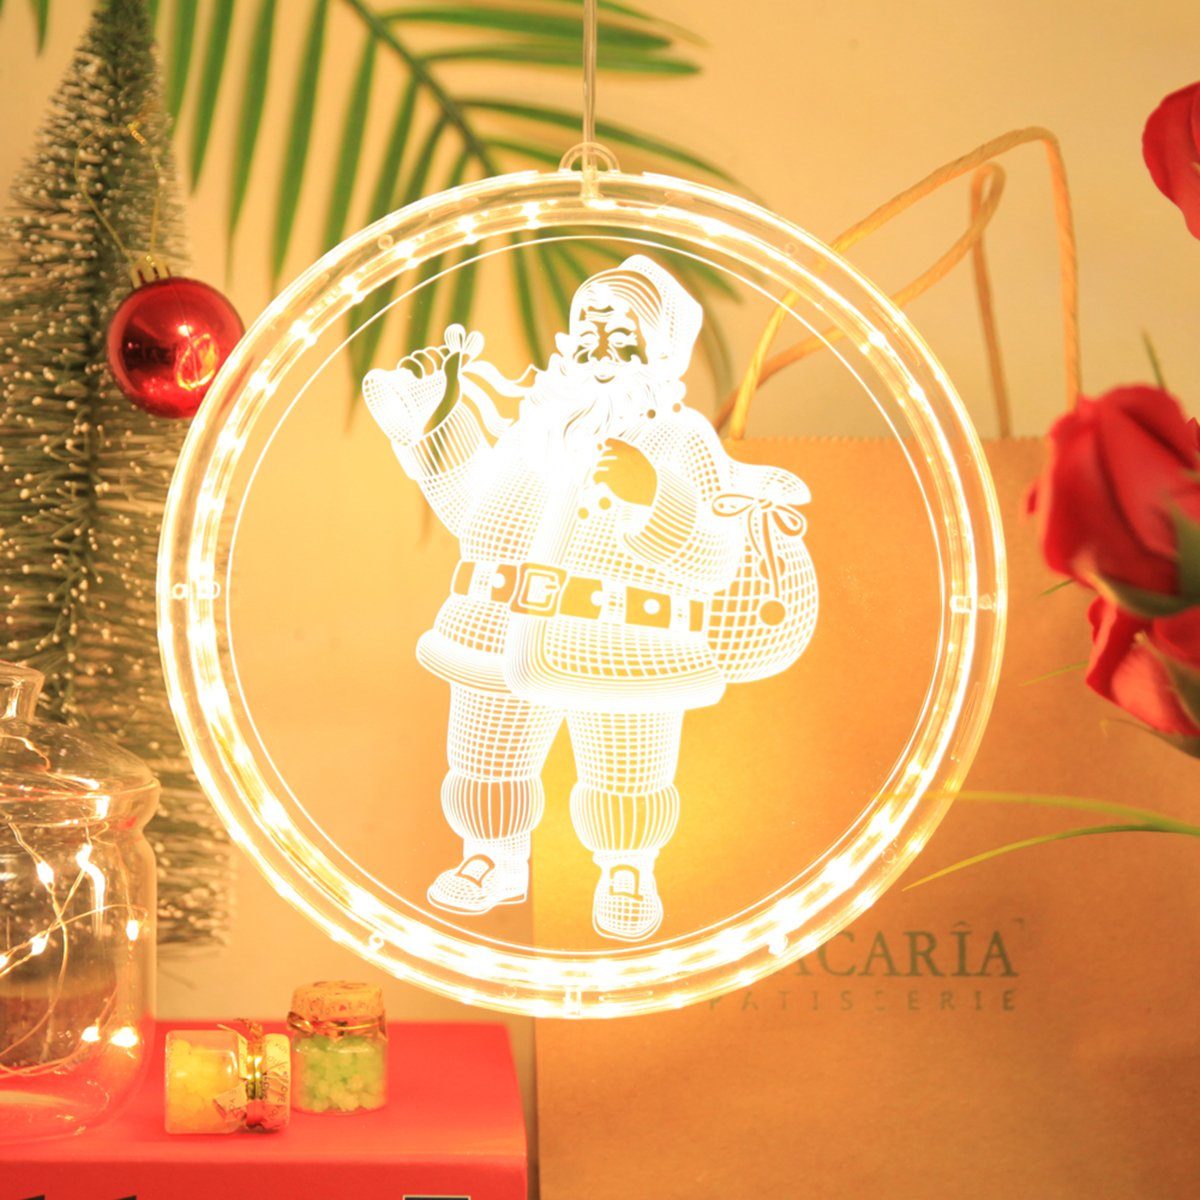 Rosnek Beleuchtetes Fensterbild Weihnachtsbeleuchtung LED Lichtervorhang, mit Saugnapf,Party Deko, Hakenaufhängung, selbstklebend